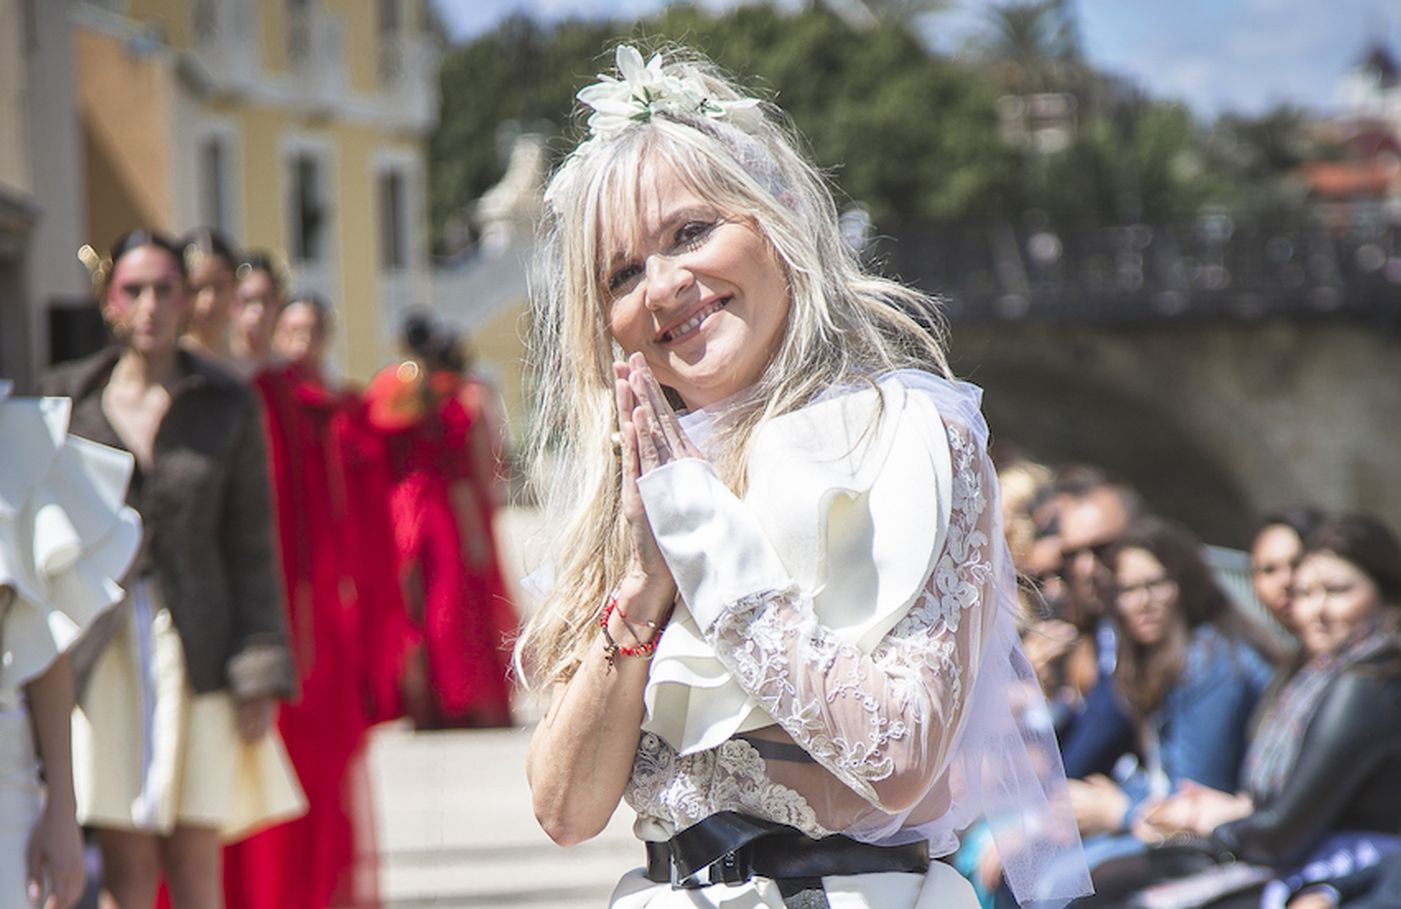 La moda sostenible protagonista en el desfile de la prestigiosa diseñadora leonesa María Lafuente en la terraza de Molinos del Río